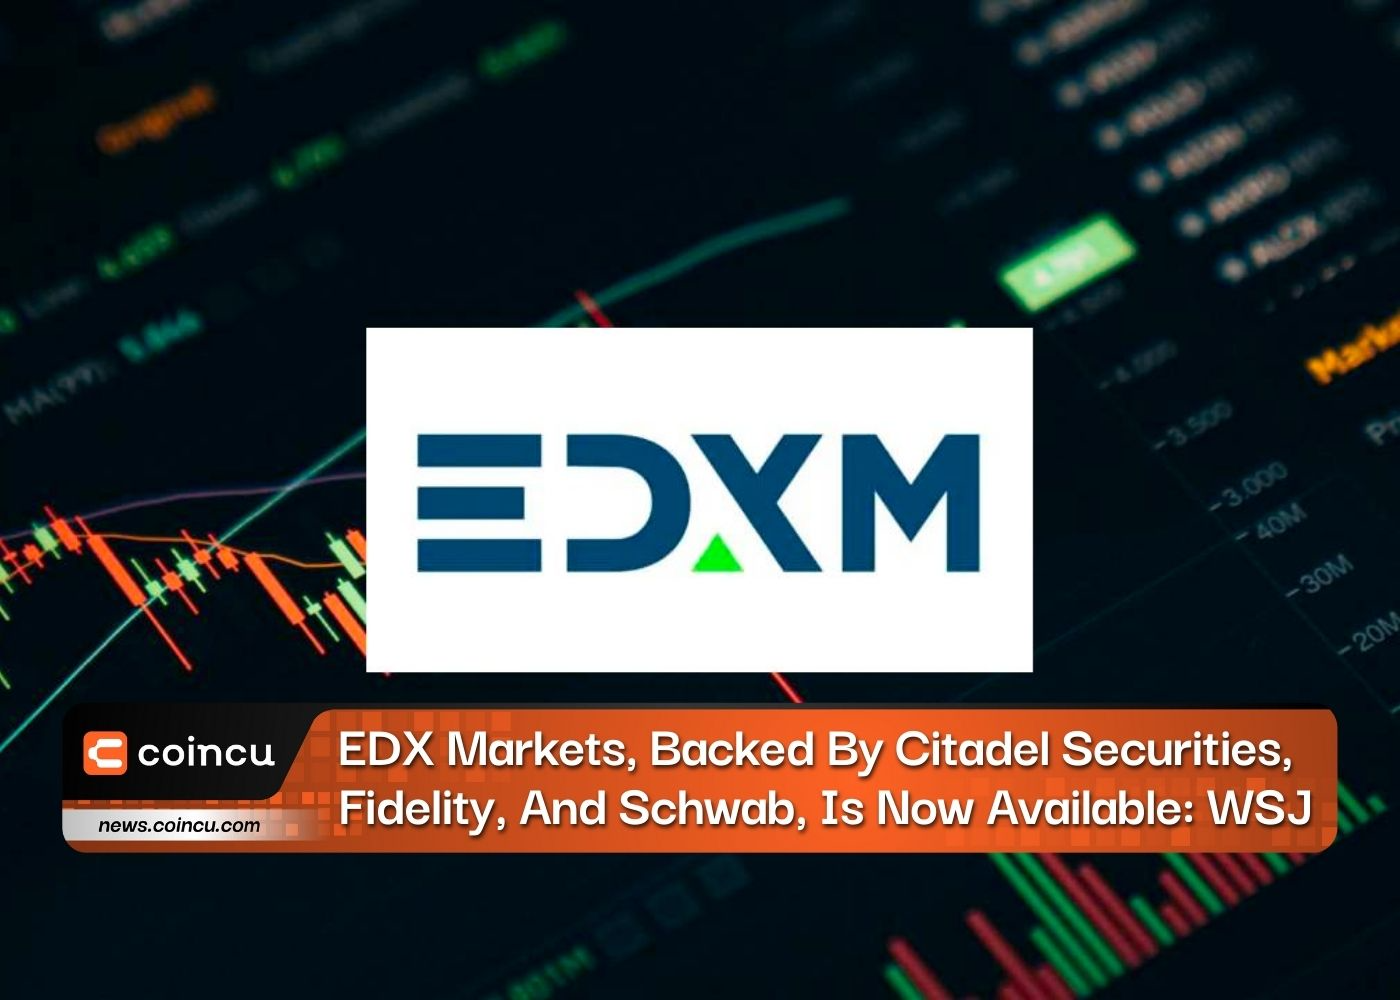 EDX Markets, được hỗ trợ bởi Citadel Securities, Fidelity và Schwab, hiện đã có sẵn: WSJ